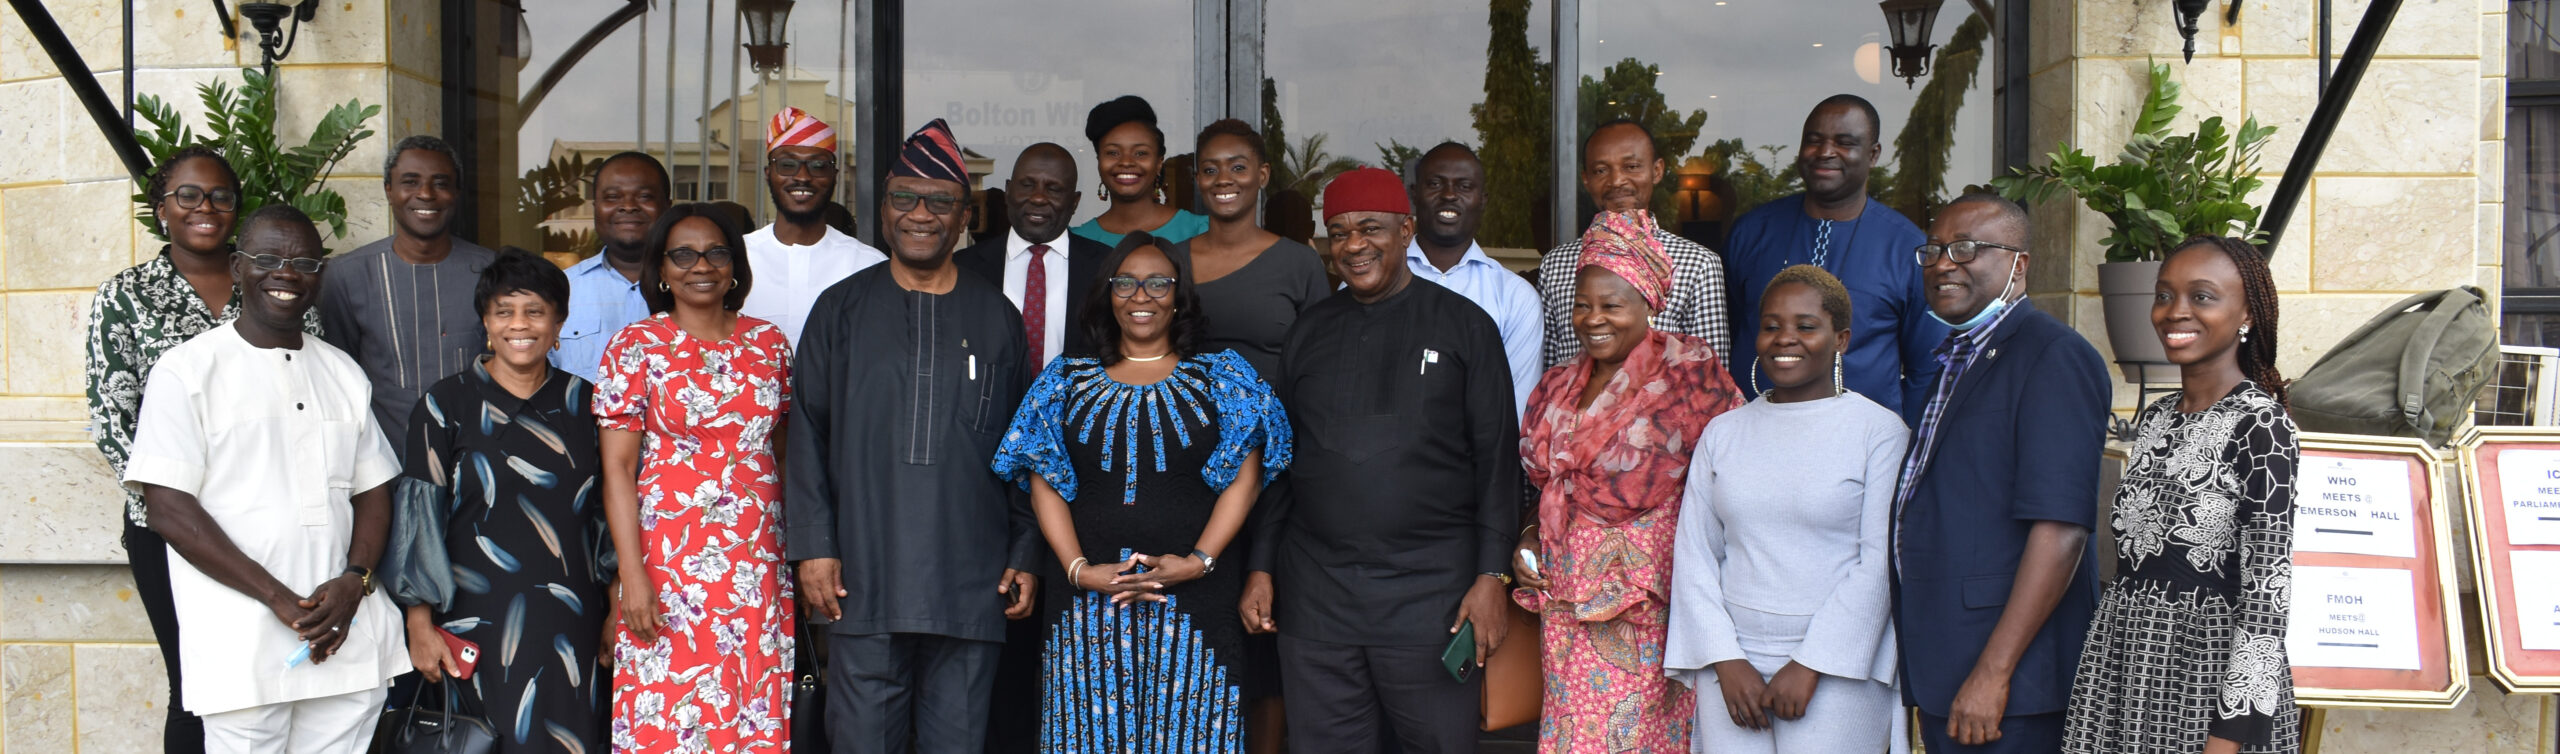 La Commission nigériane de lutte contre la pauvreté et les maladies non transmissibles (NCDI) tient sa première réunion élargie de définition des priorités.